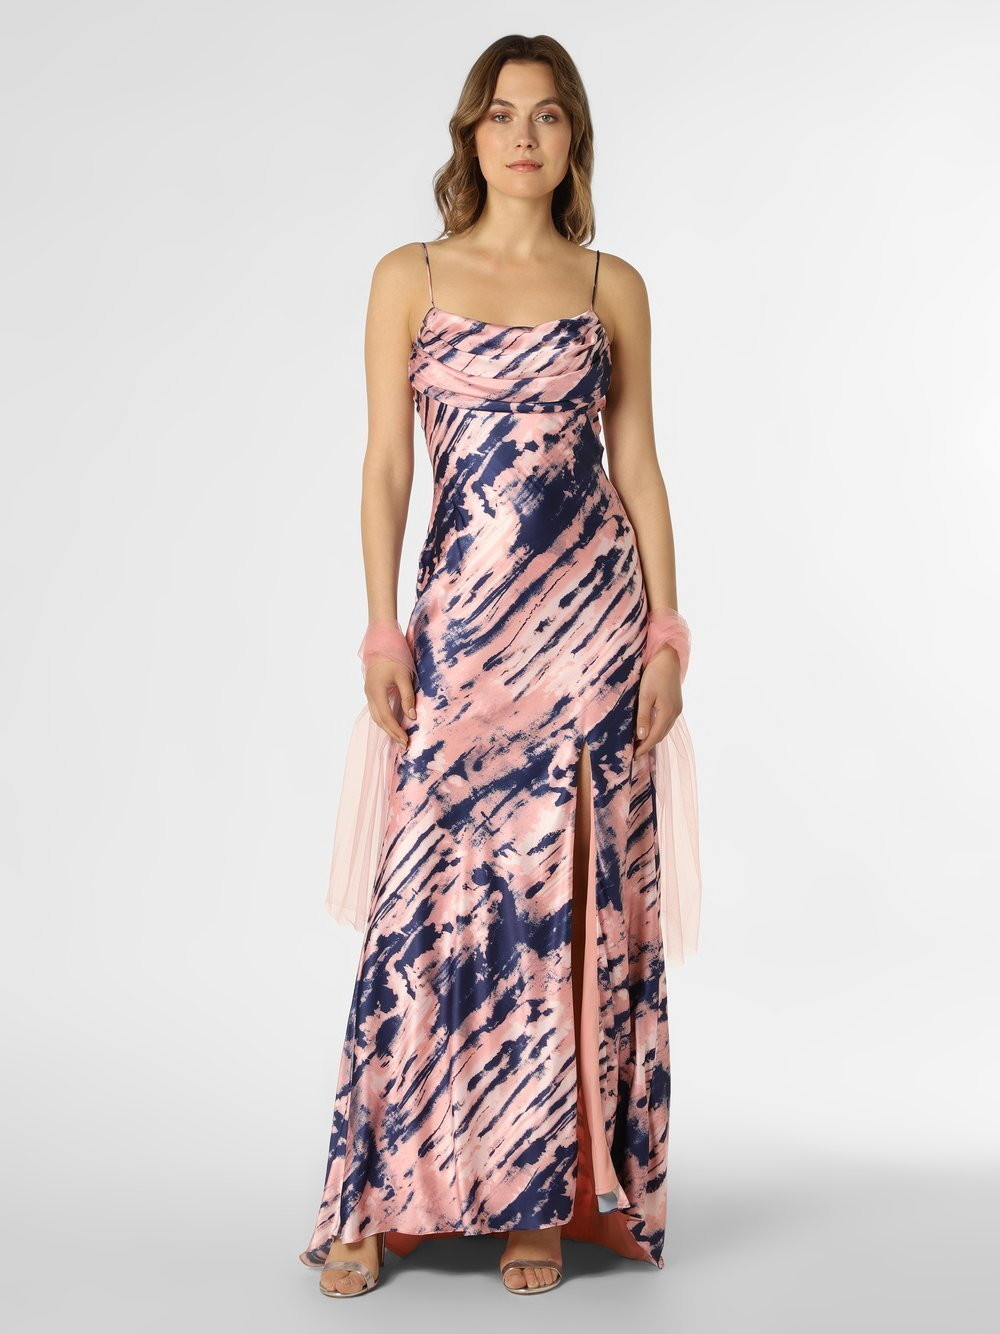 Unique Damska sukienka wieczorowa z etolą, różowy|niebieski